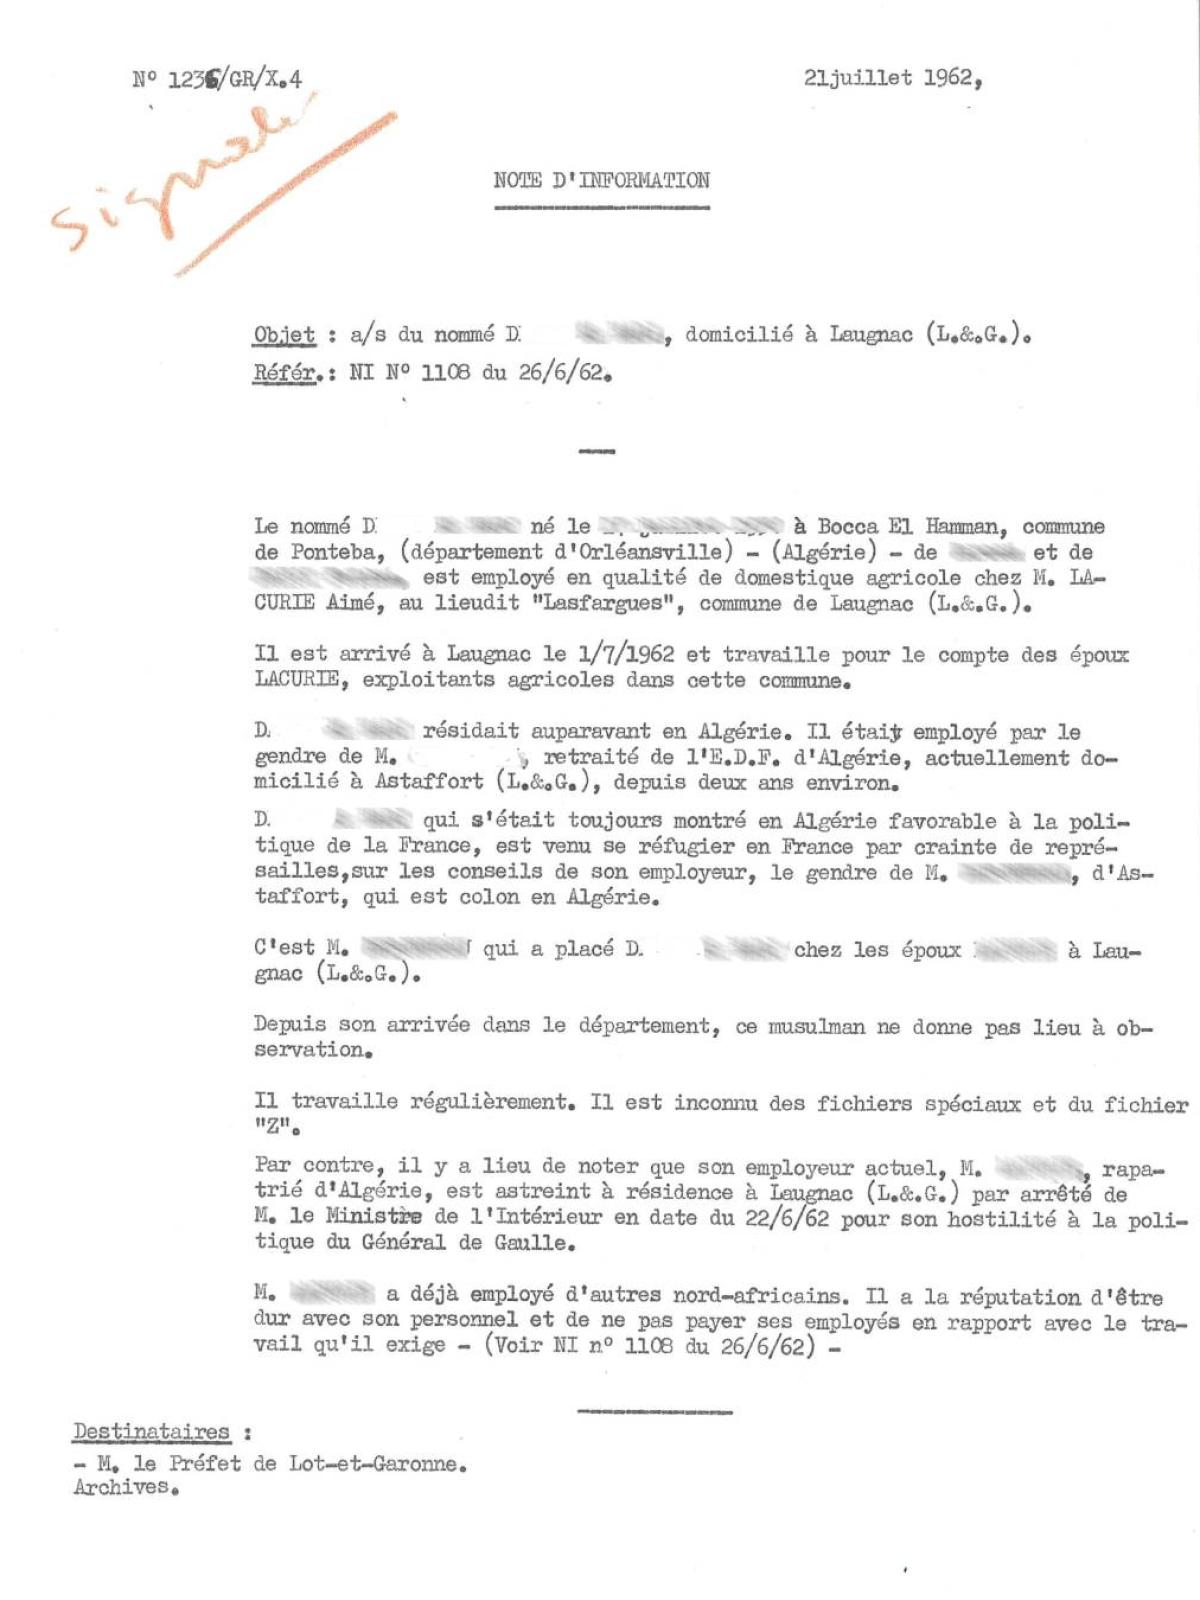 Illustration 13 : note d’information destinée au préfet du Lot-et-Garonne sur un Harki employé dans une exploitation agricole locale, 21 juillet 1962